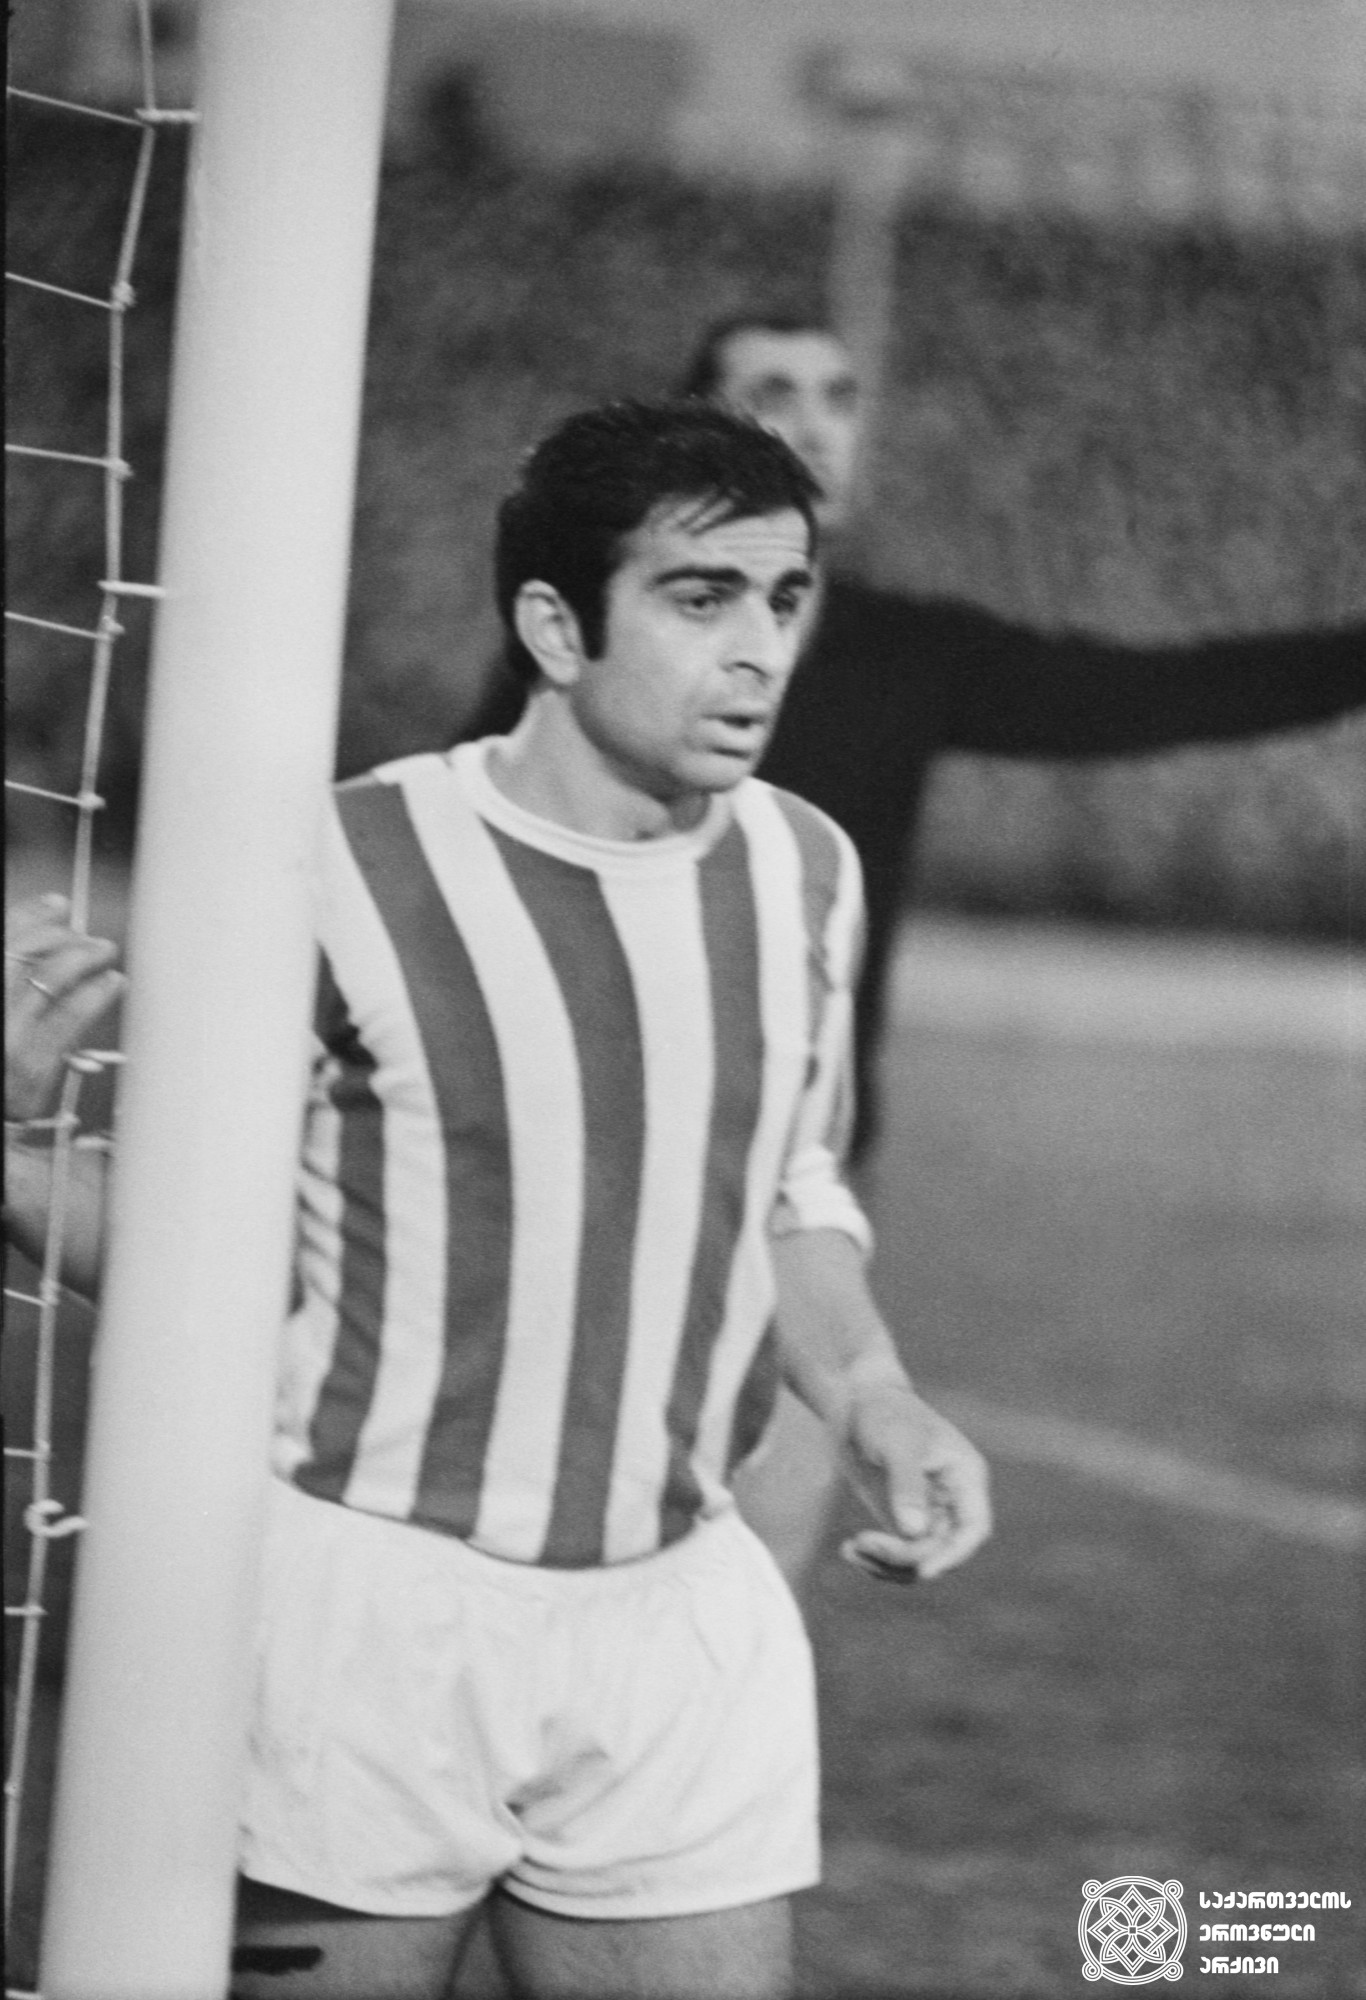 მურთაზ ხურცილავა. <br>
XX ოლიმპიური თამაშების მესამე პრიზიორი ფეხბურთში (1972 წელი, მიუნხენი). <br>
Murtaz Khurtsilava. <br>
Third-prize winner of the XX Olympic Games in Football (1972, Munich).